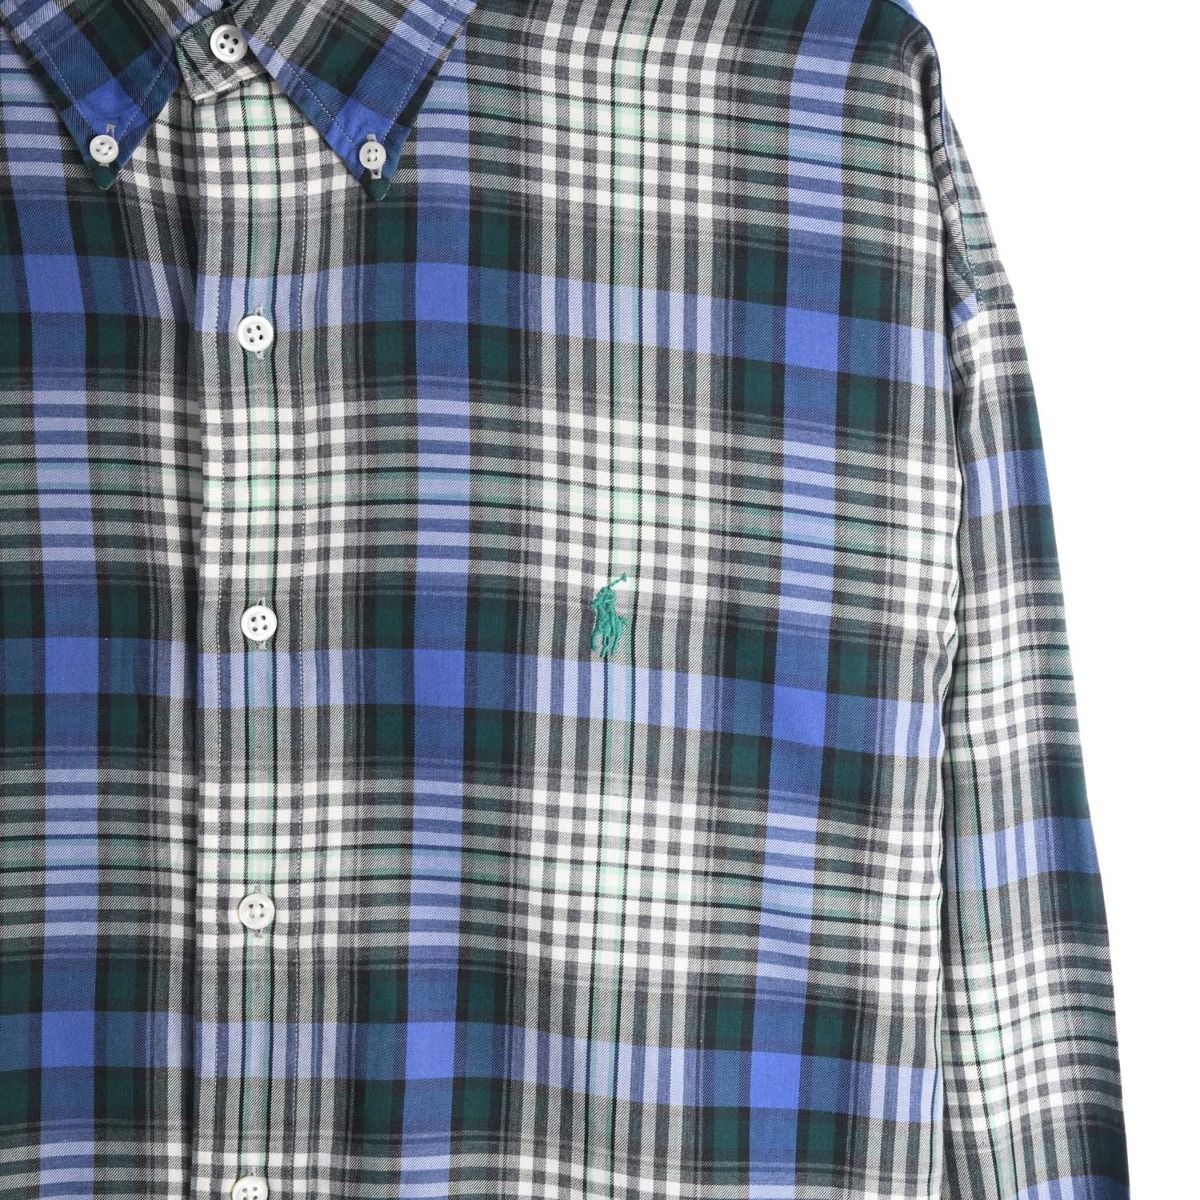 Ralph Lauren Blue and Green Checkered Shirt